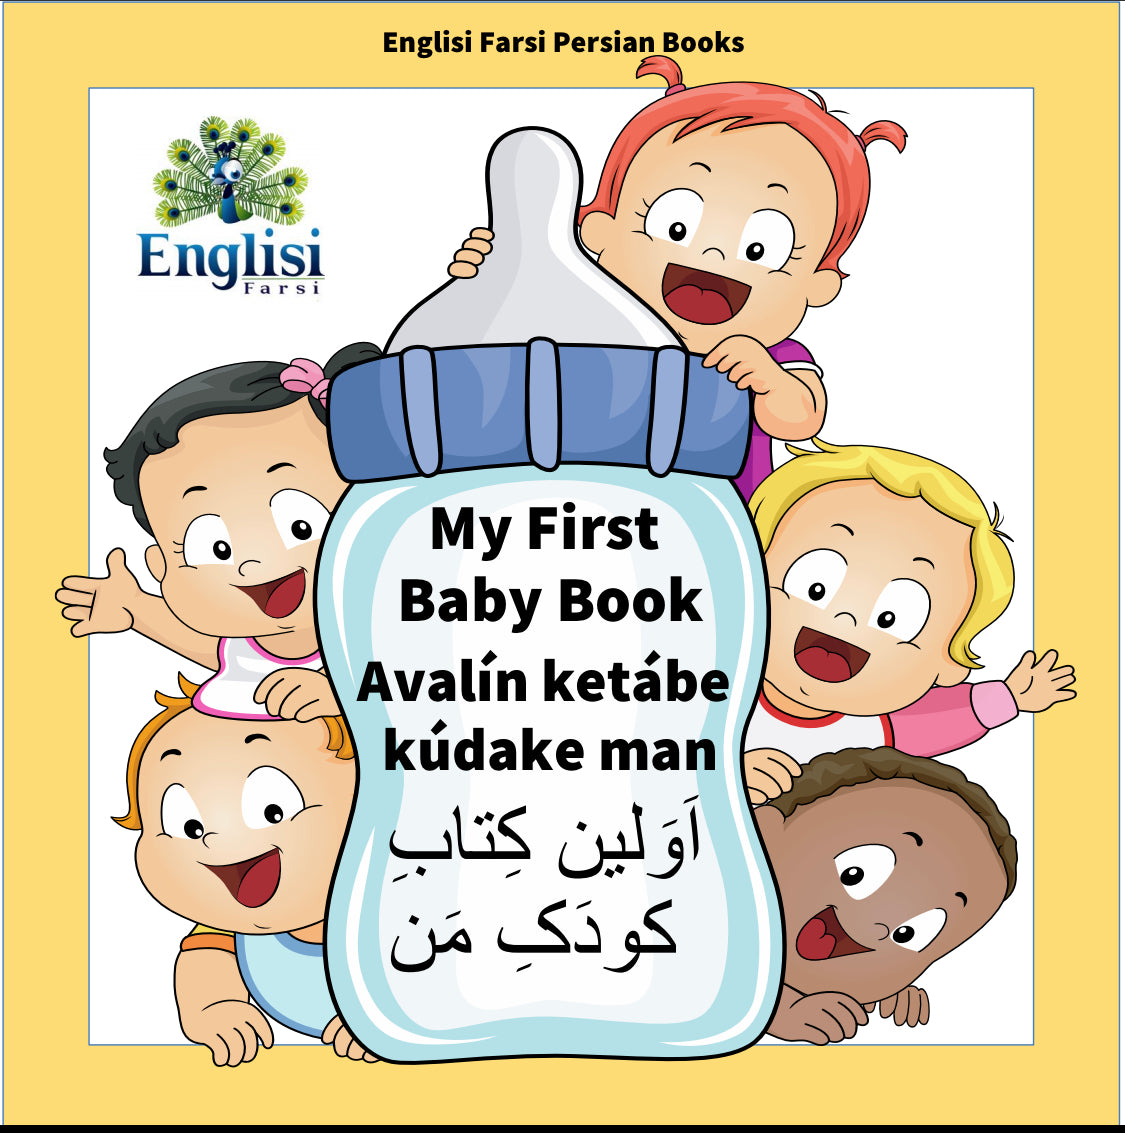 Persian baby book